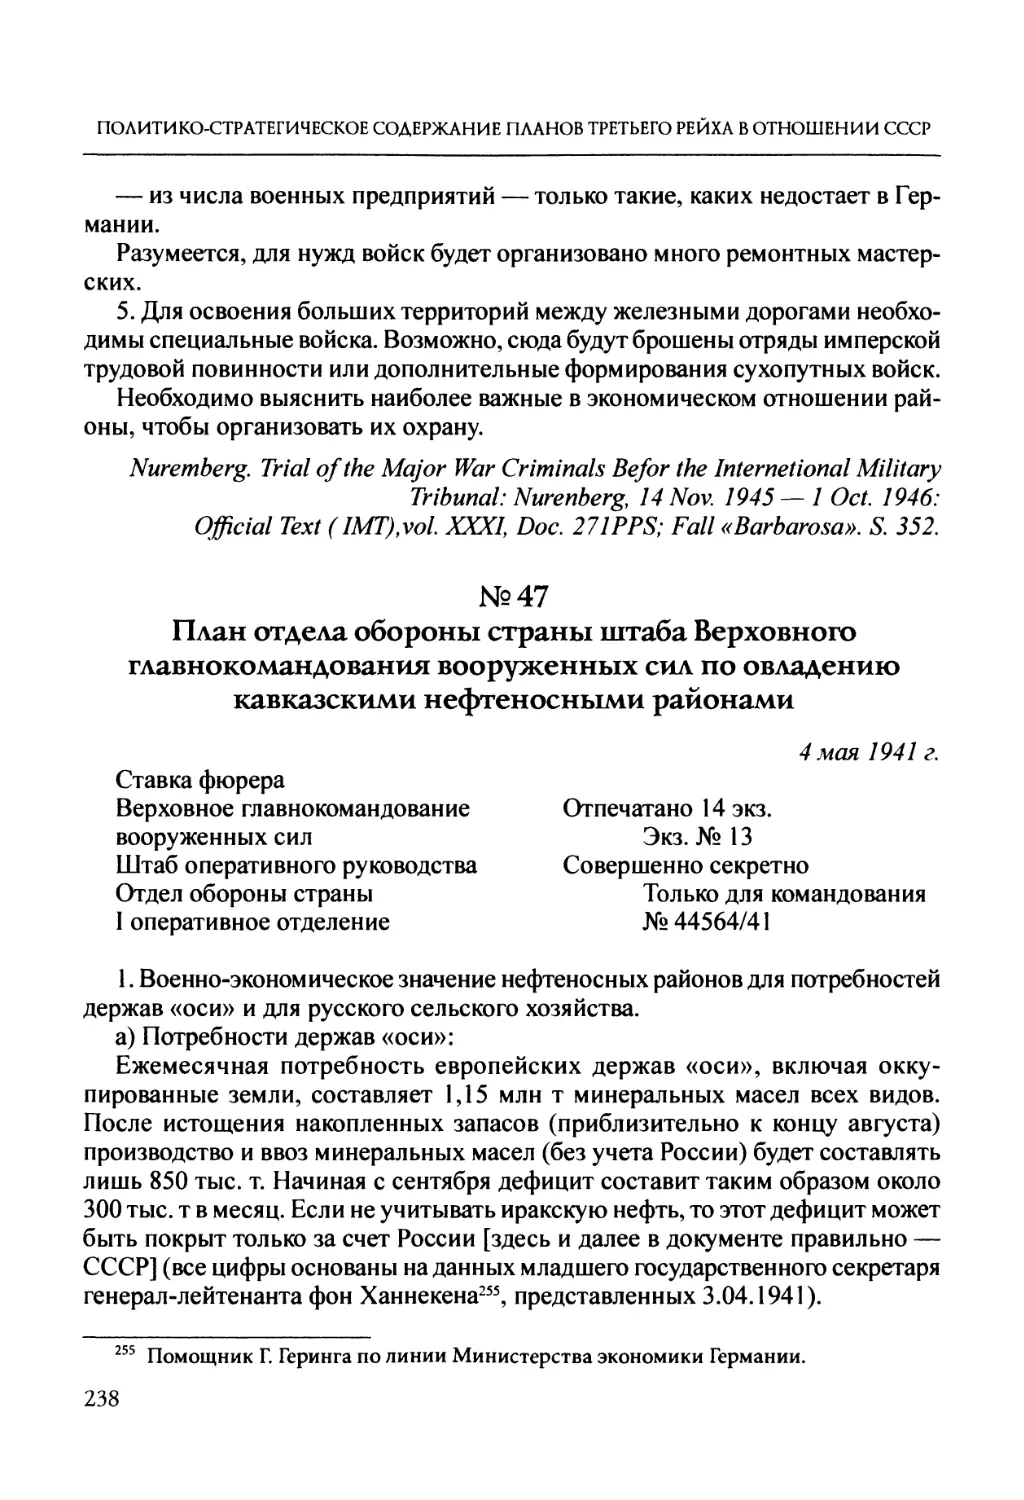 №47. План отдела обороны страны штаба Верховного главнокомандования вооруженных сил по овладению кавказскими нефтеносными районами